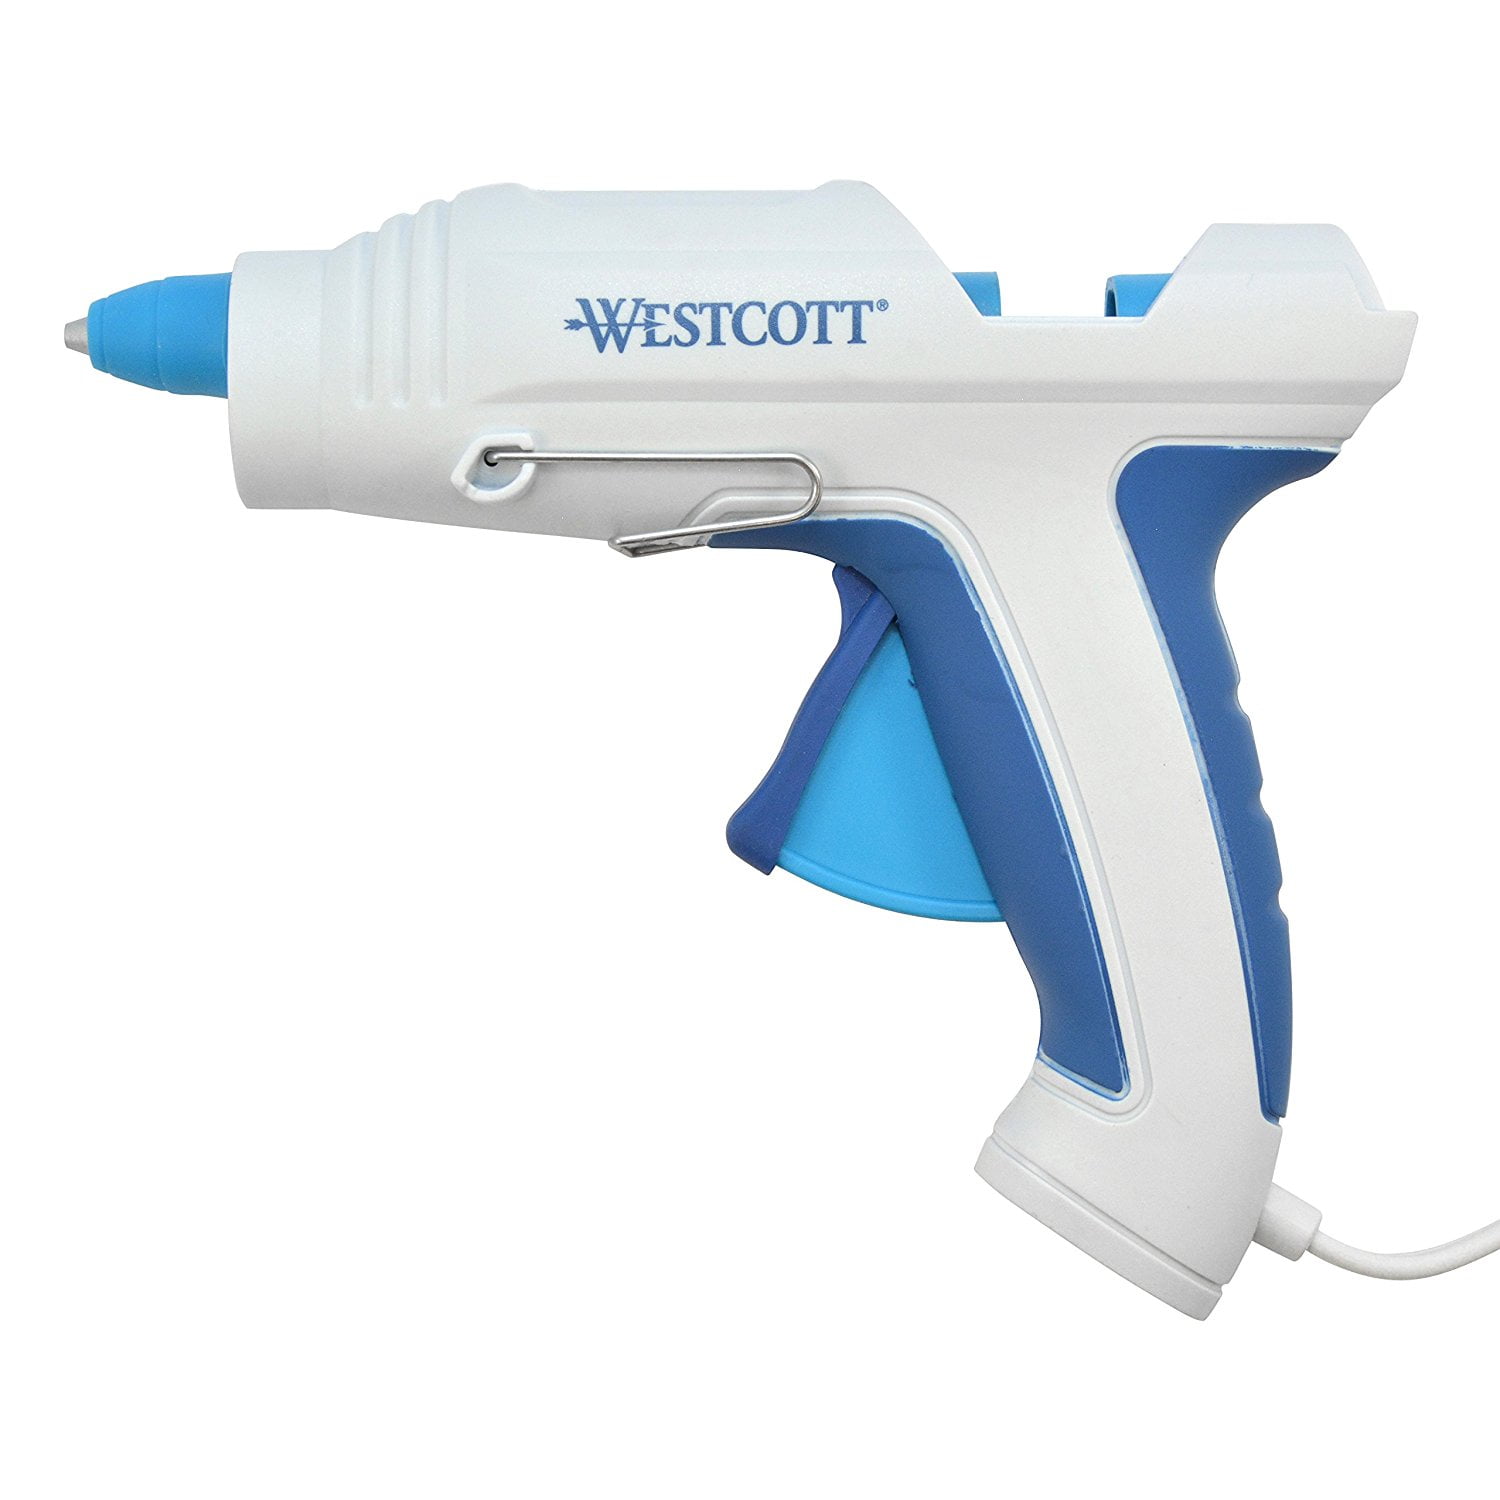 Westcott - Westcott Premium Large Hot Glue Gun, 100 Watt (17116-002)